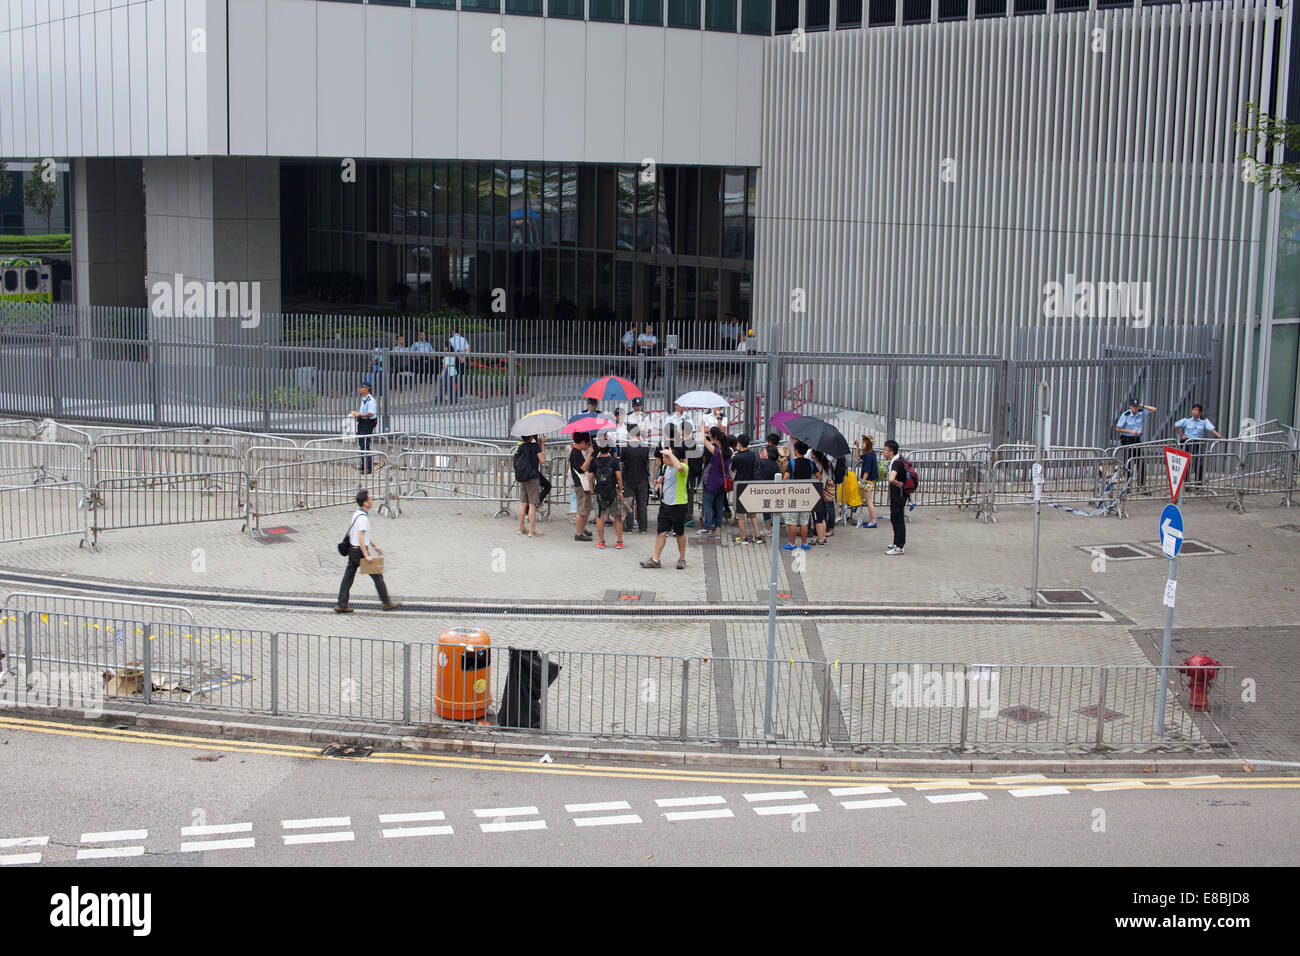 Hong Kong, Chine, le 4 octobre 2014 la démocratie Pro manifestants ont bloqué les rues de Hong Kong Banque D'Images